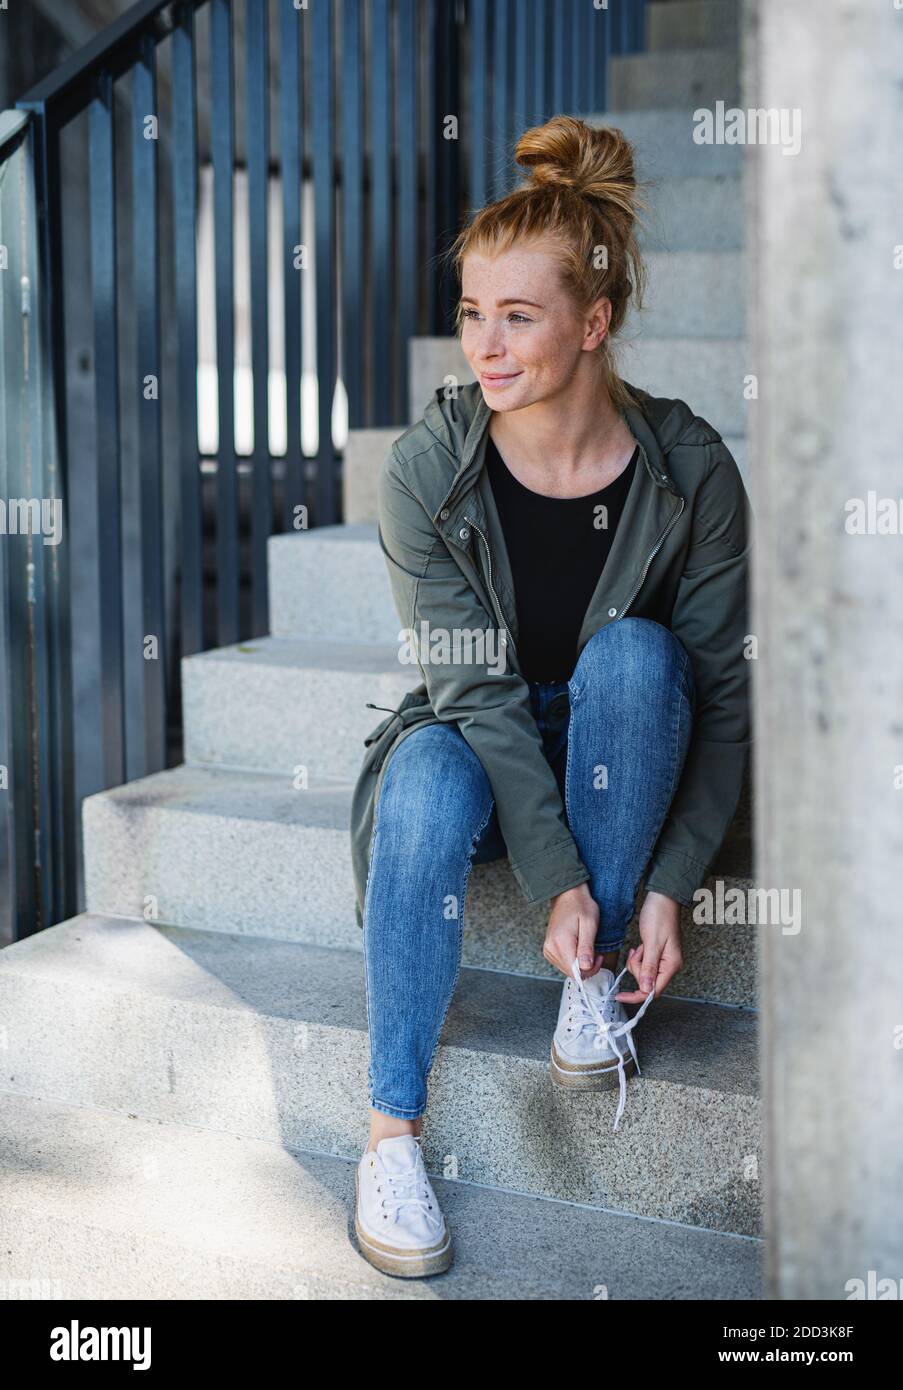 Portrait de jeune femme aux cheveux rouges dehors en ville, nouant des lacets sur l'escalier. Banque D'Images